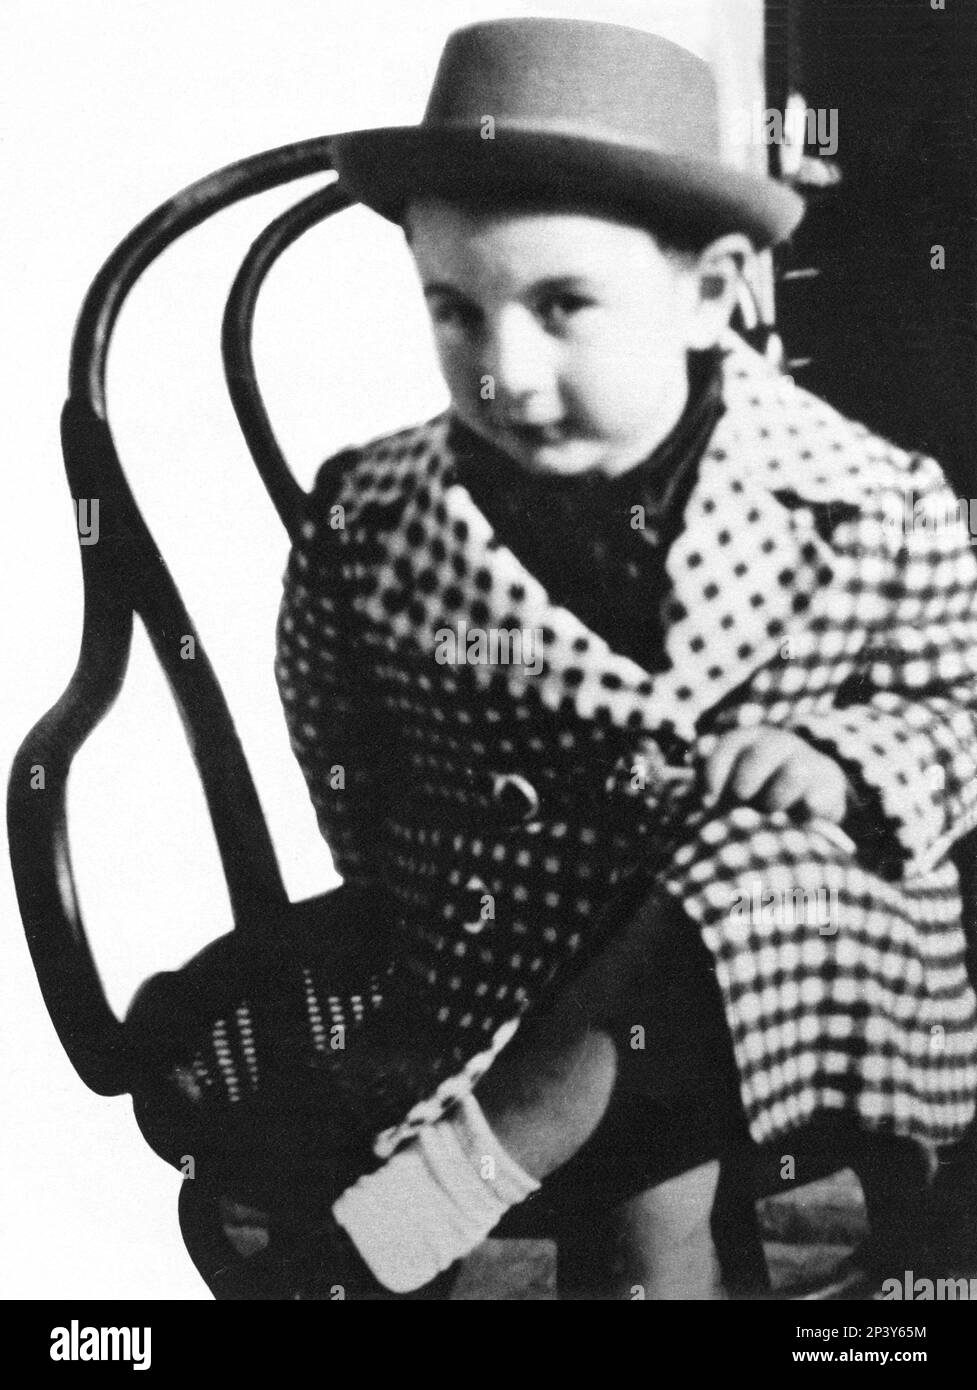 1939 ca.  : The future  italian television presenter PIPPO BAUDO ( born 7 june 1936 , Militello , Sicily ) , when was a child -  TELEVISIONE - PRESENTATORE TELEVISIVO - avanspettacolo - cabaret - varieté varietà   -  personalità celebrità da giovane piccolo giovani piccoli - celebrity celebrities personality personalities when was young youngs boys - children - baby - bambino bambini - hat - cappello   ----  Archivio GBB Stock Photo